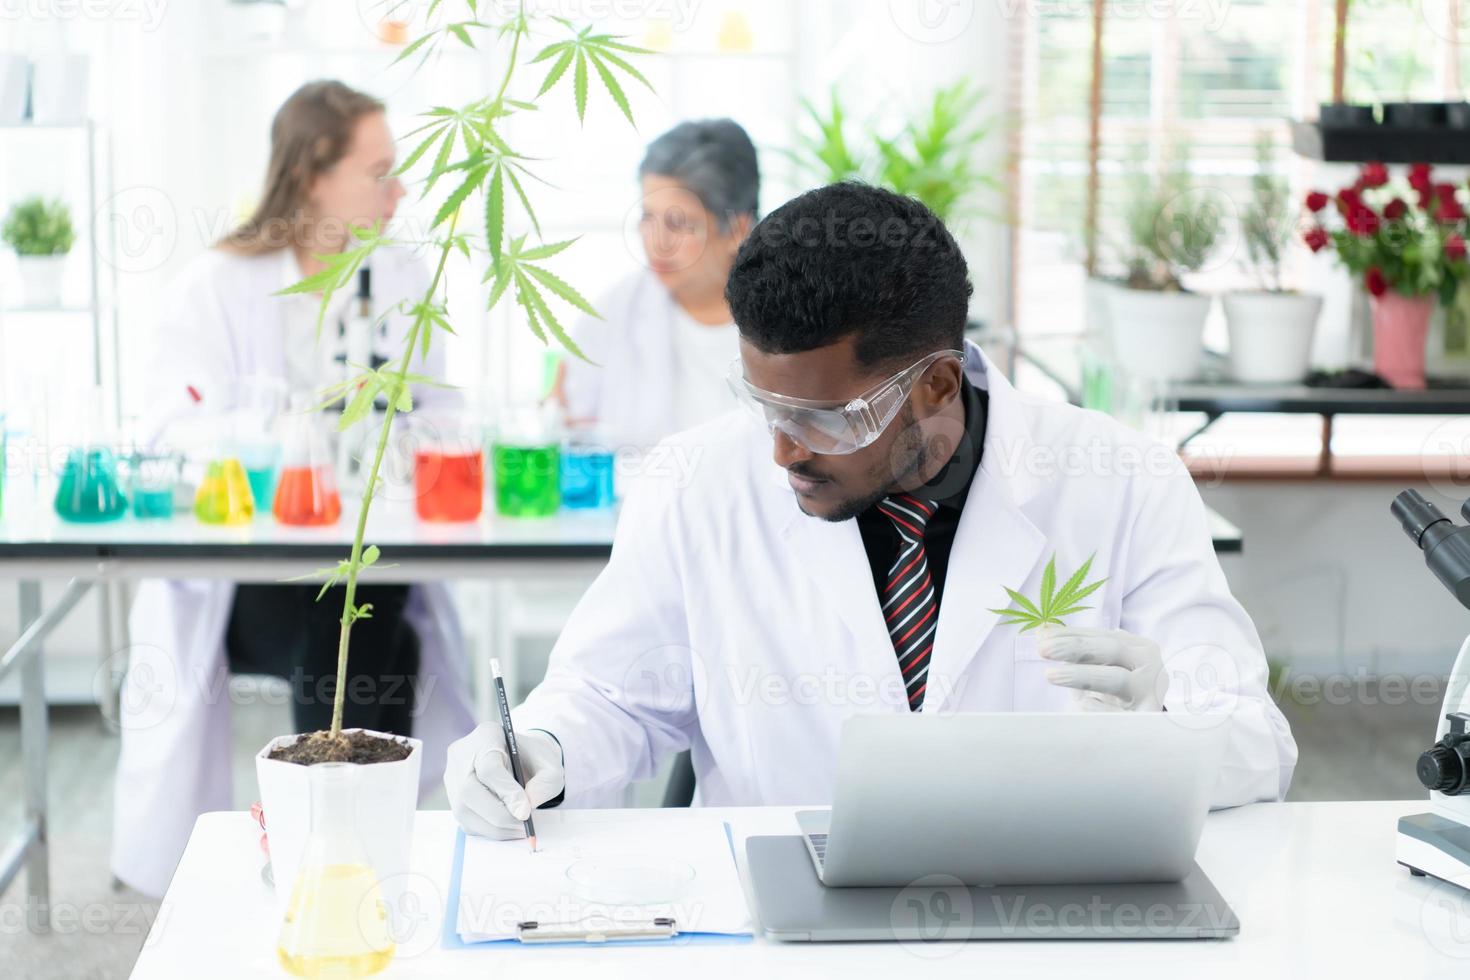 dans le laboratoire scientifique de l'université, des chercheurs analysent des études sur des plantes de cannabis photo